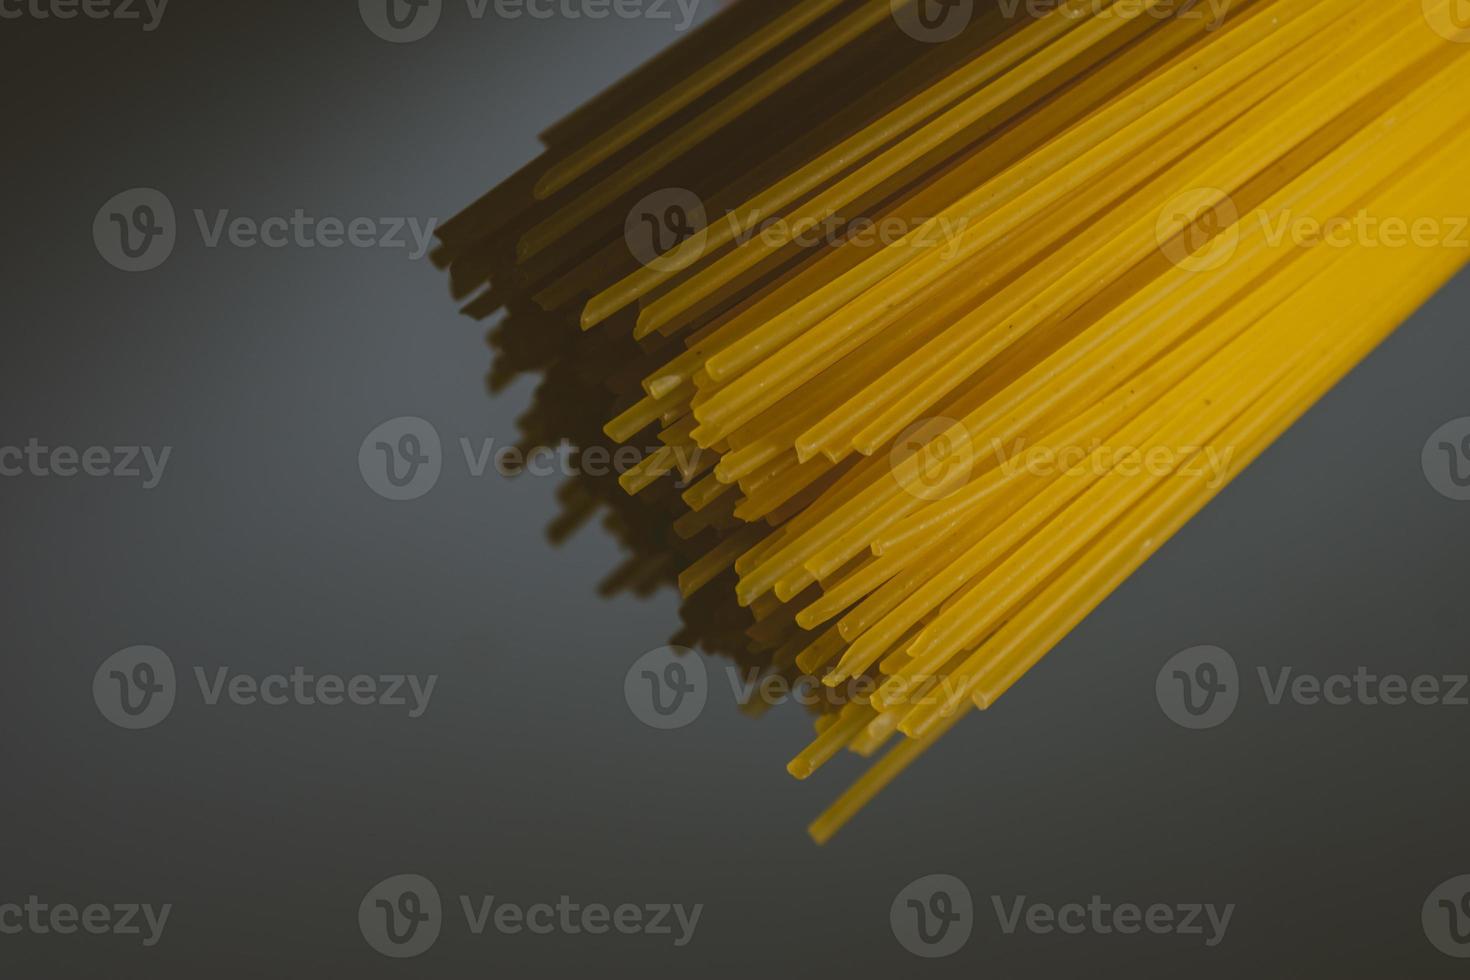 Raw pasta on a dark background photo